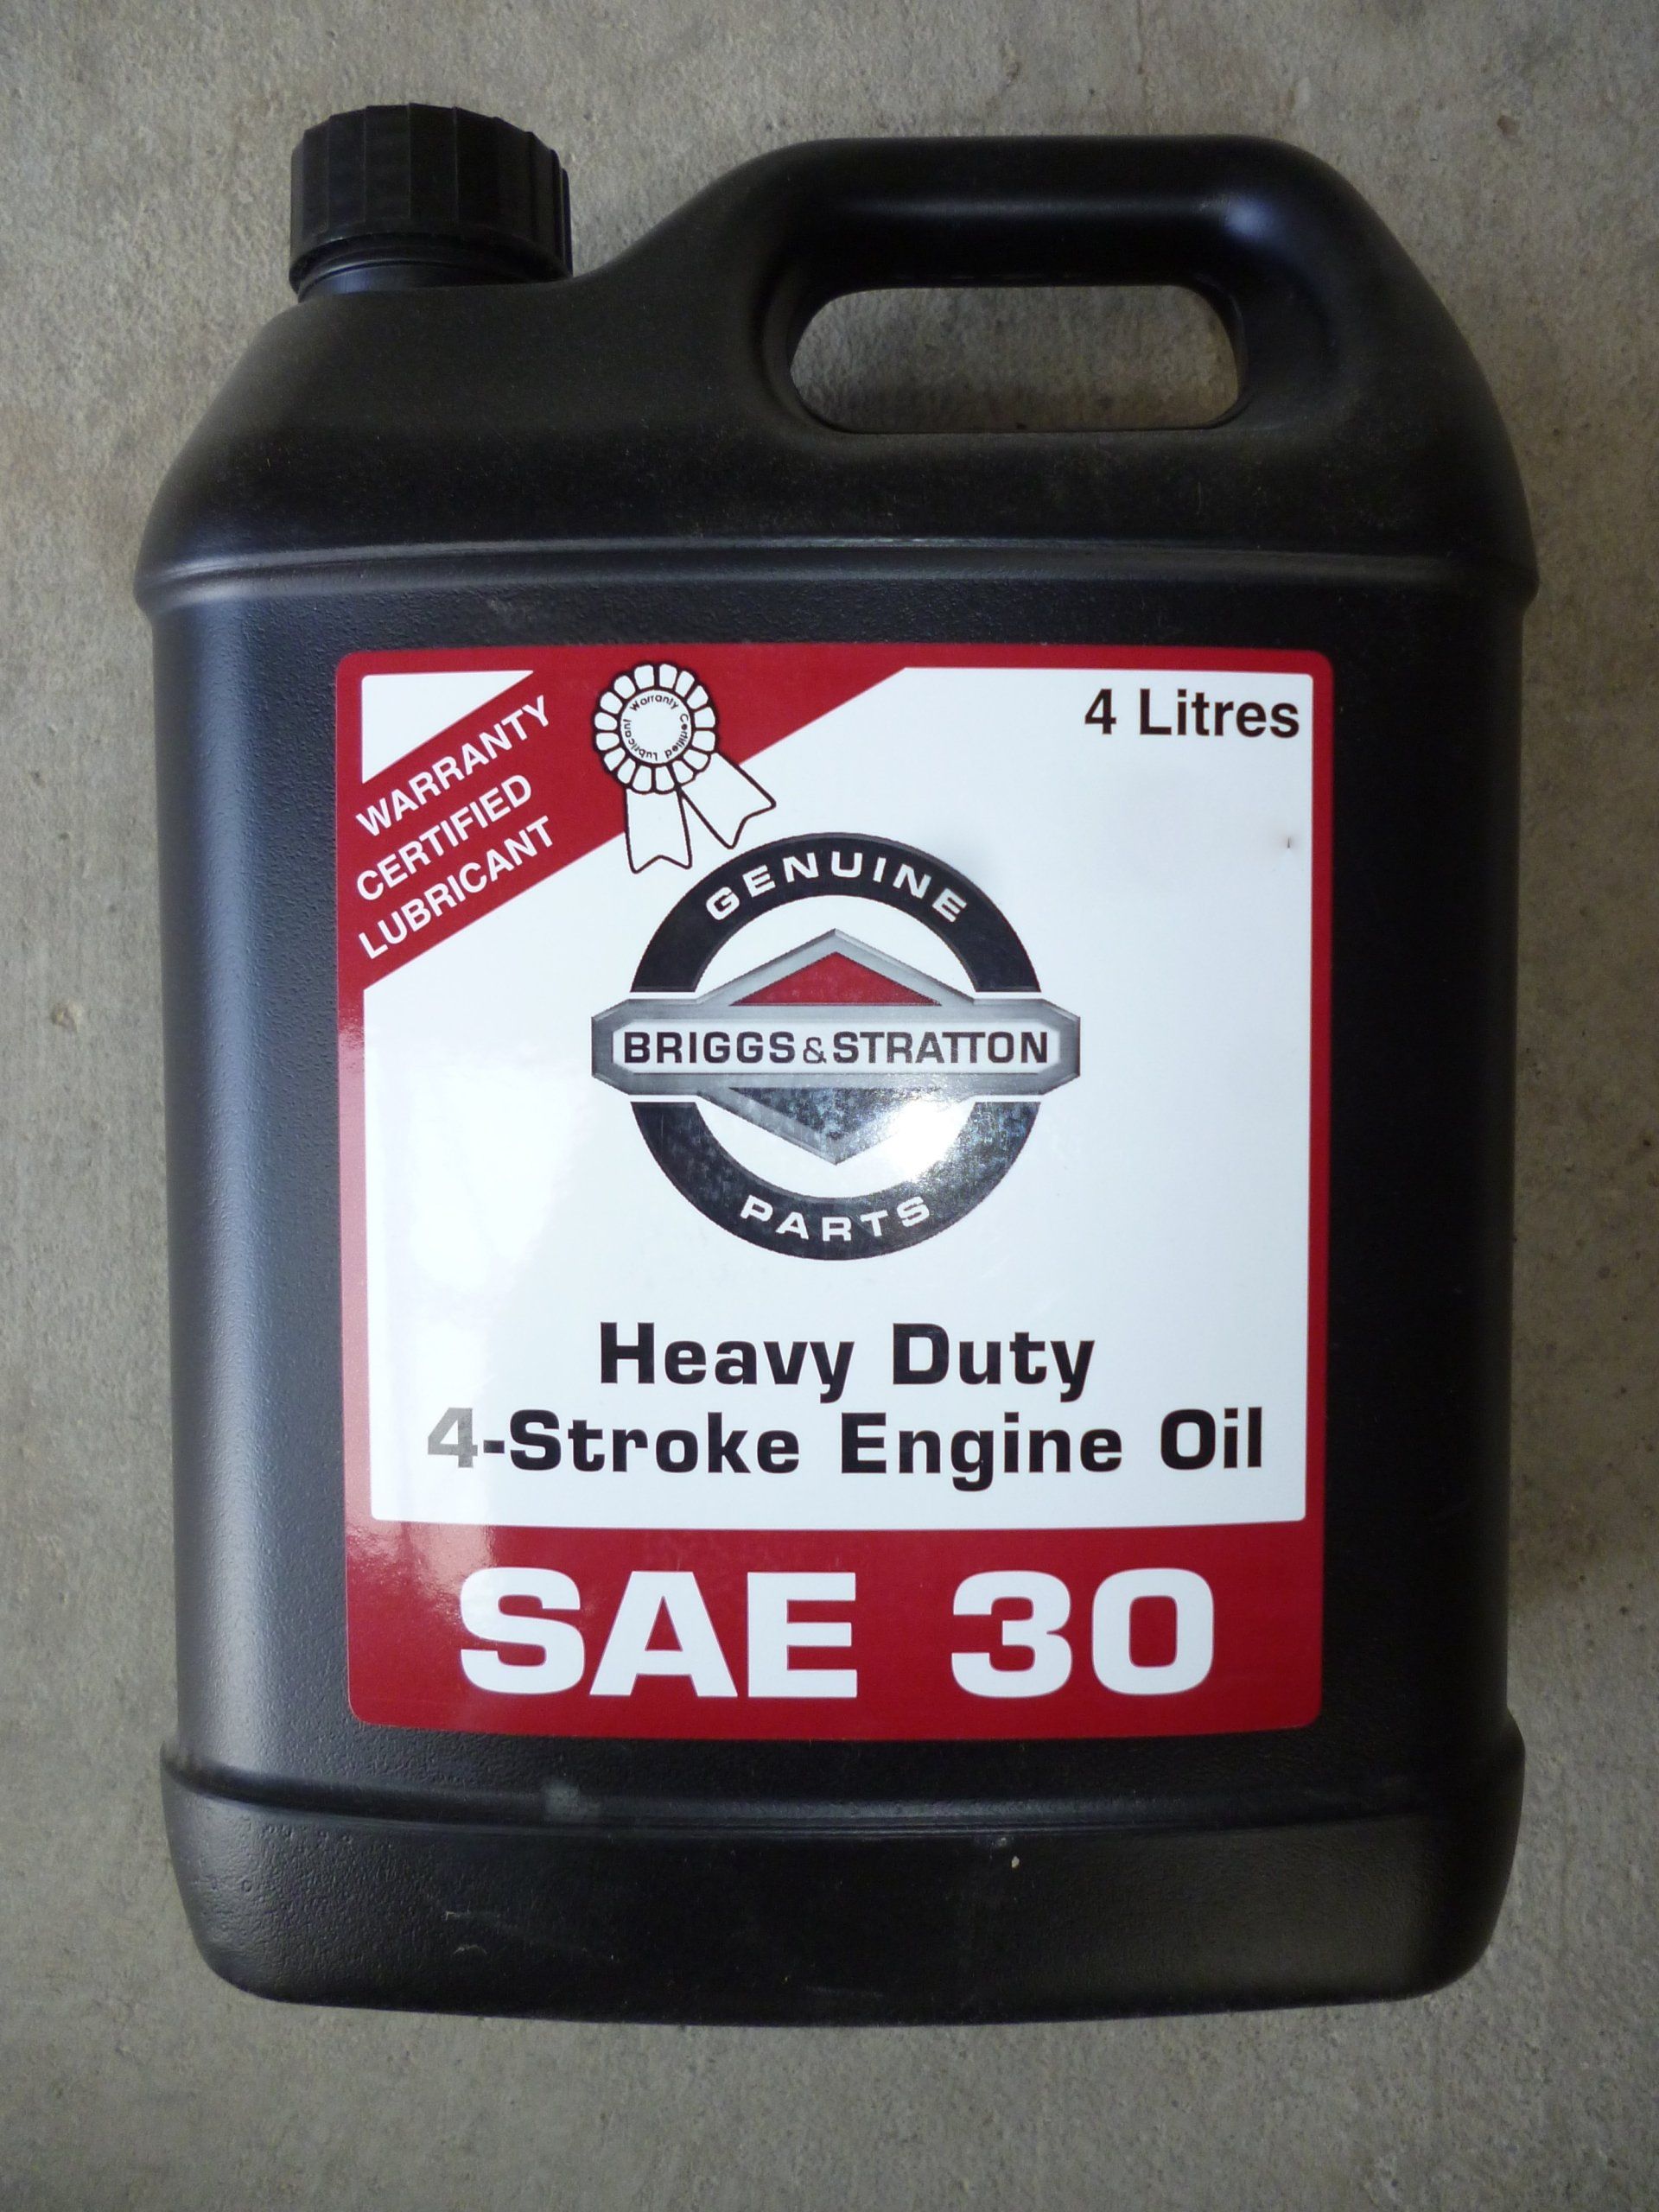 Heavy duty 4 stroke engine oil